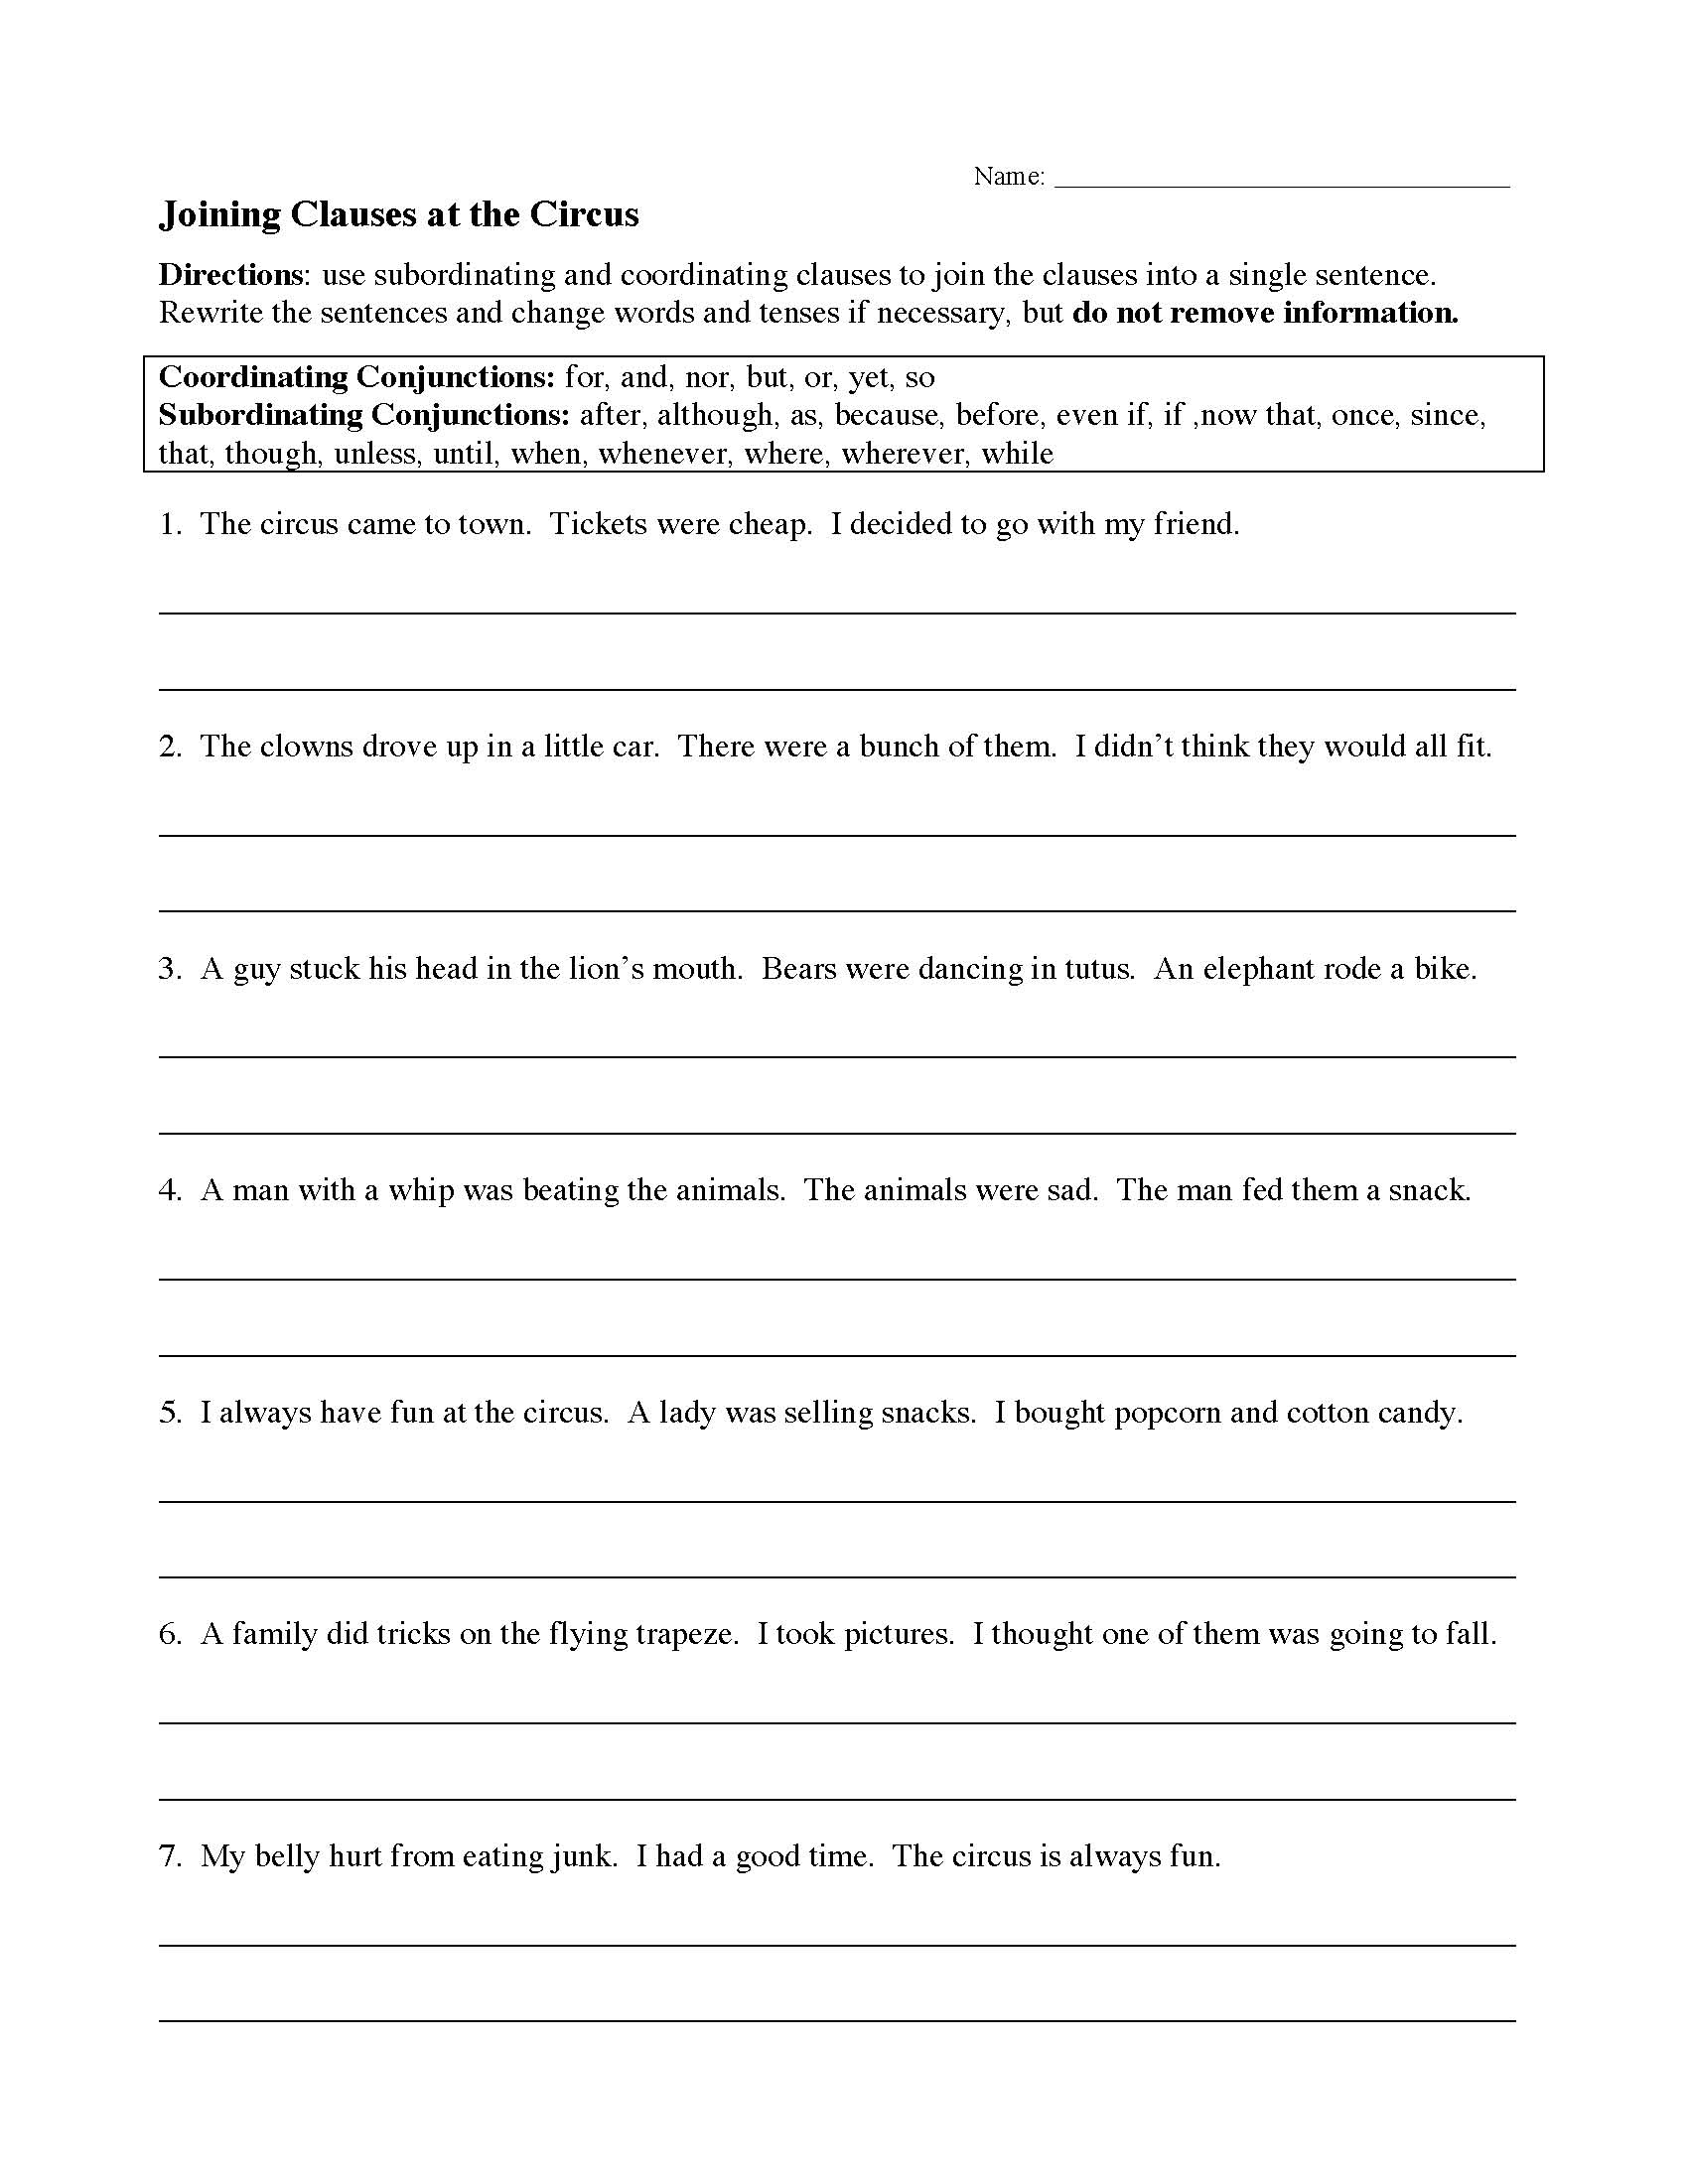 practice-sentence-structure-worksheets-worksheets-for-kindergarten